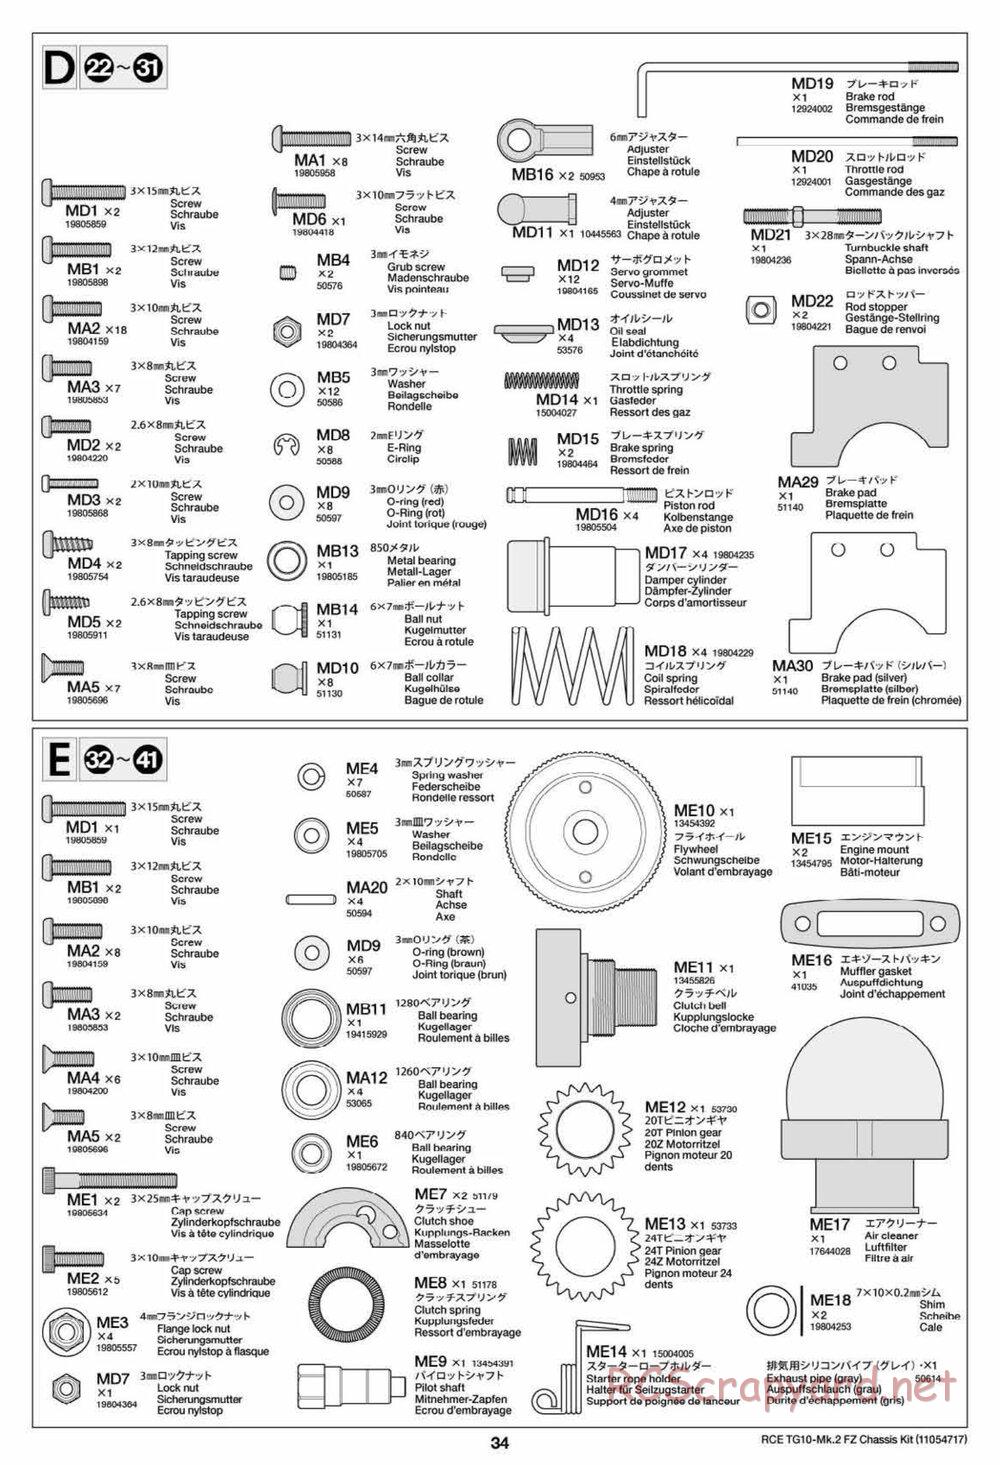 Tamiya - TG10 Mk.2 FZ Chassis - Manual - Page 34